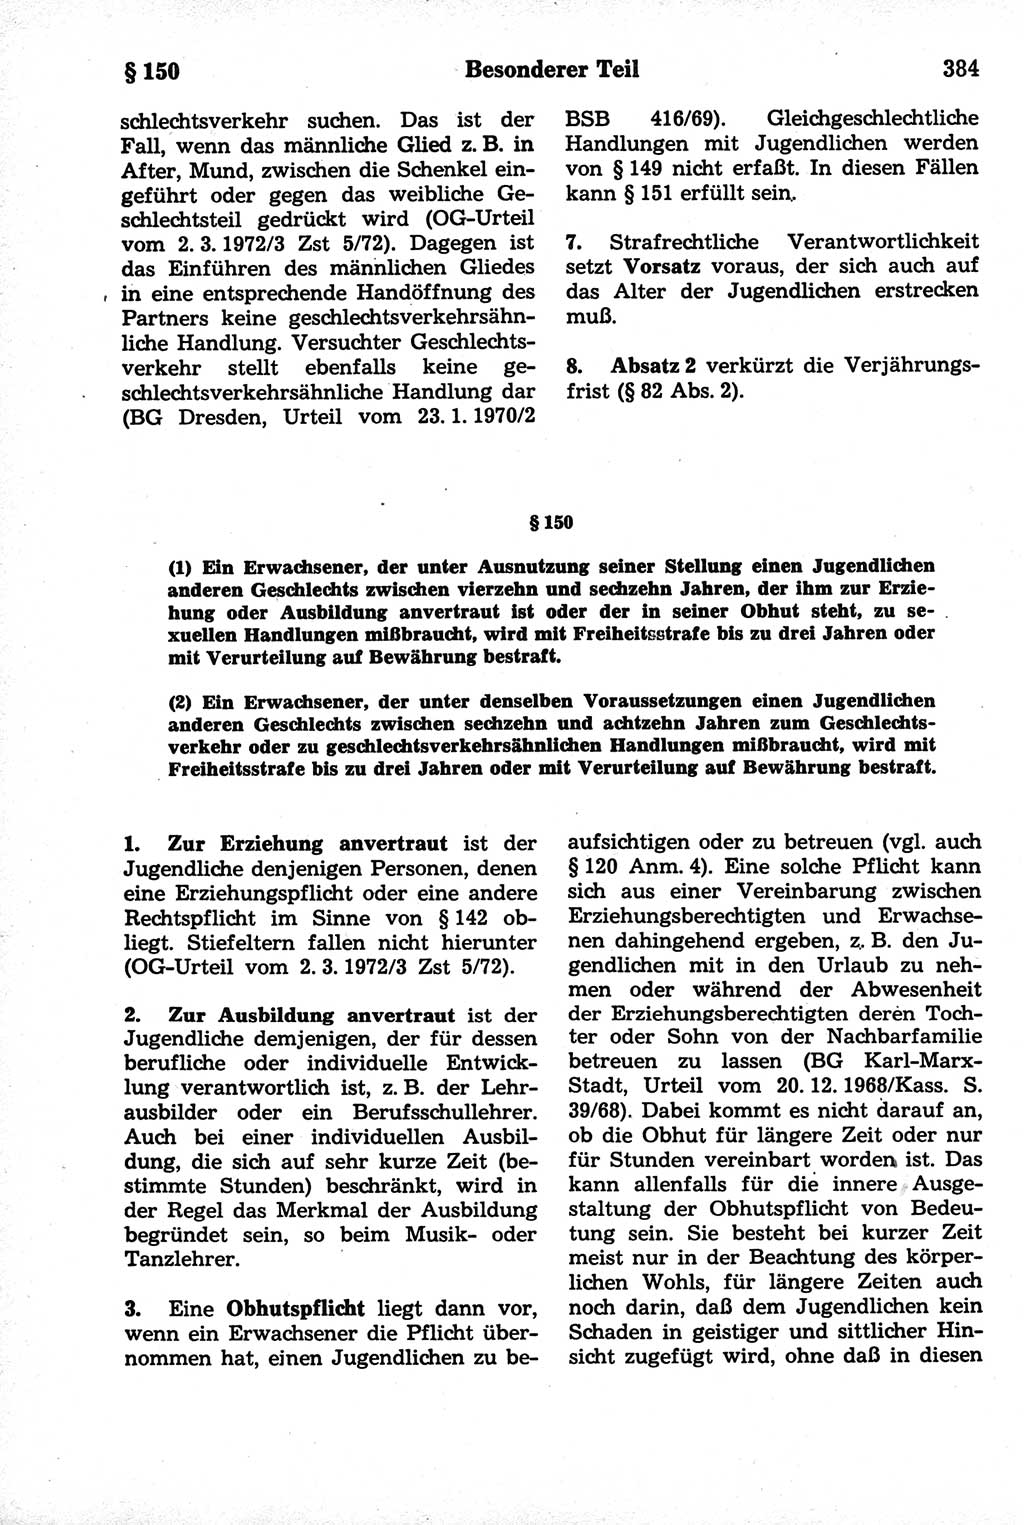 Strafrecht der Deutschen Demokratischen Republik (DDR), Kommentar zum Strafgesetzbuch (StGB) 1981, Seite 384 (Strafr. DDR Komm. StGB 1981, S. 384)